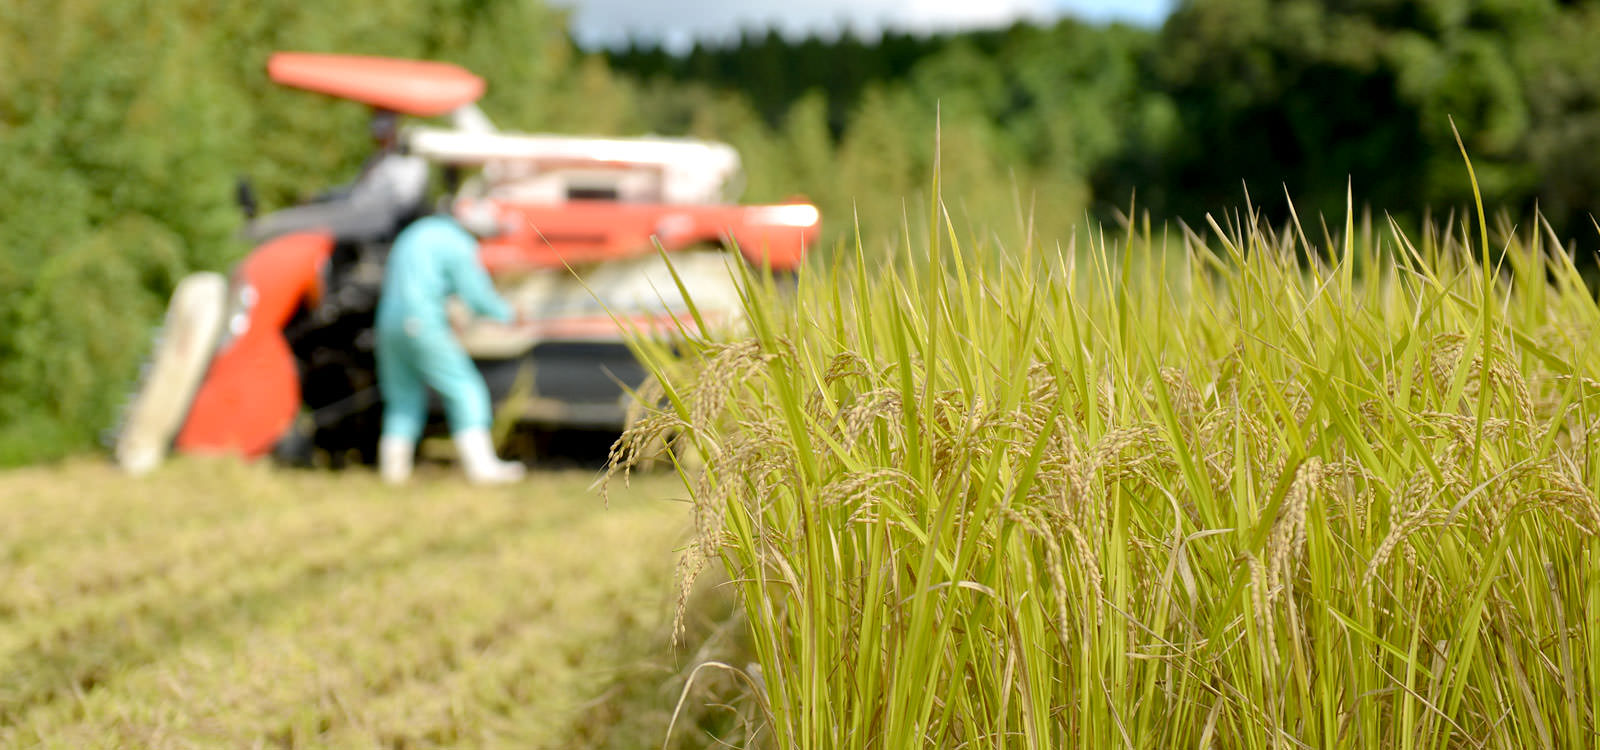 緒方孝行さんが作る、無農薬・無施肥栽培米。